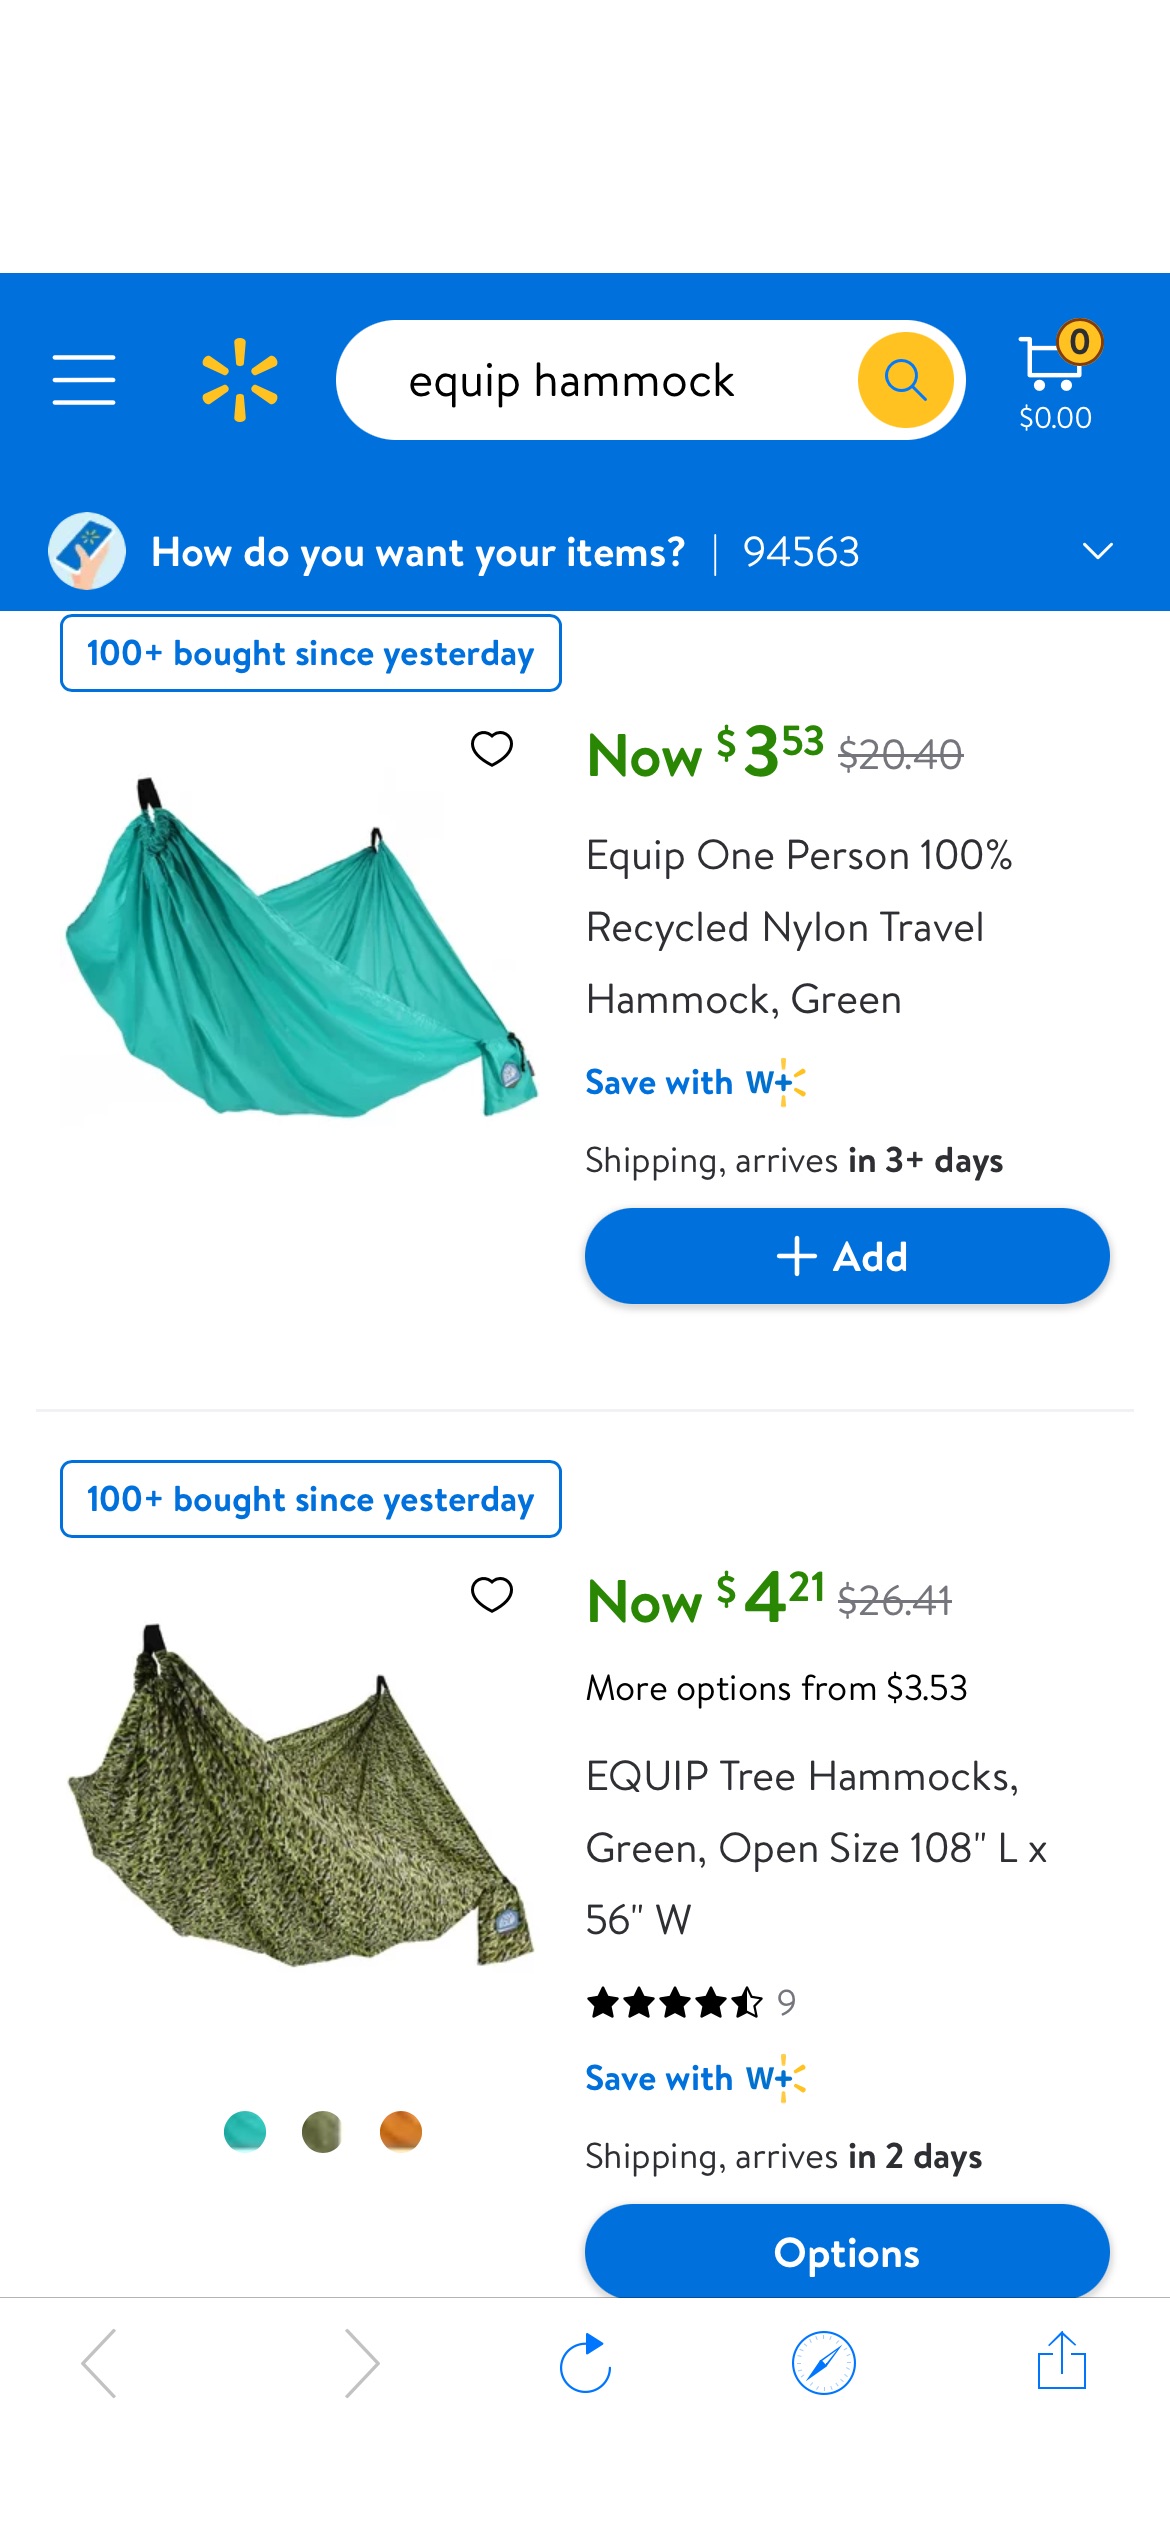 equip hammock - Walmart.com白菜价